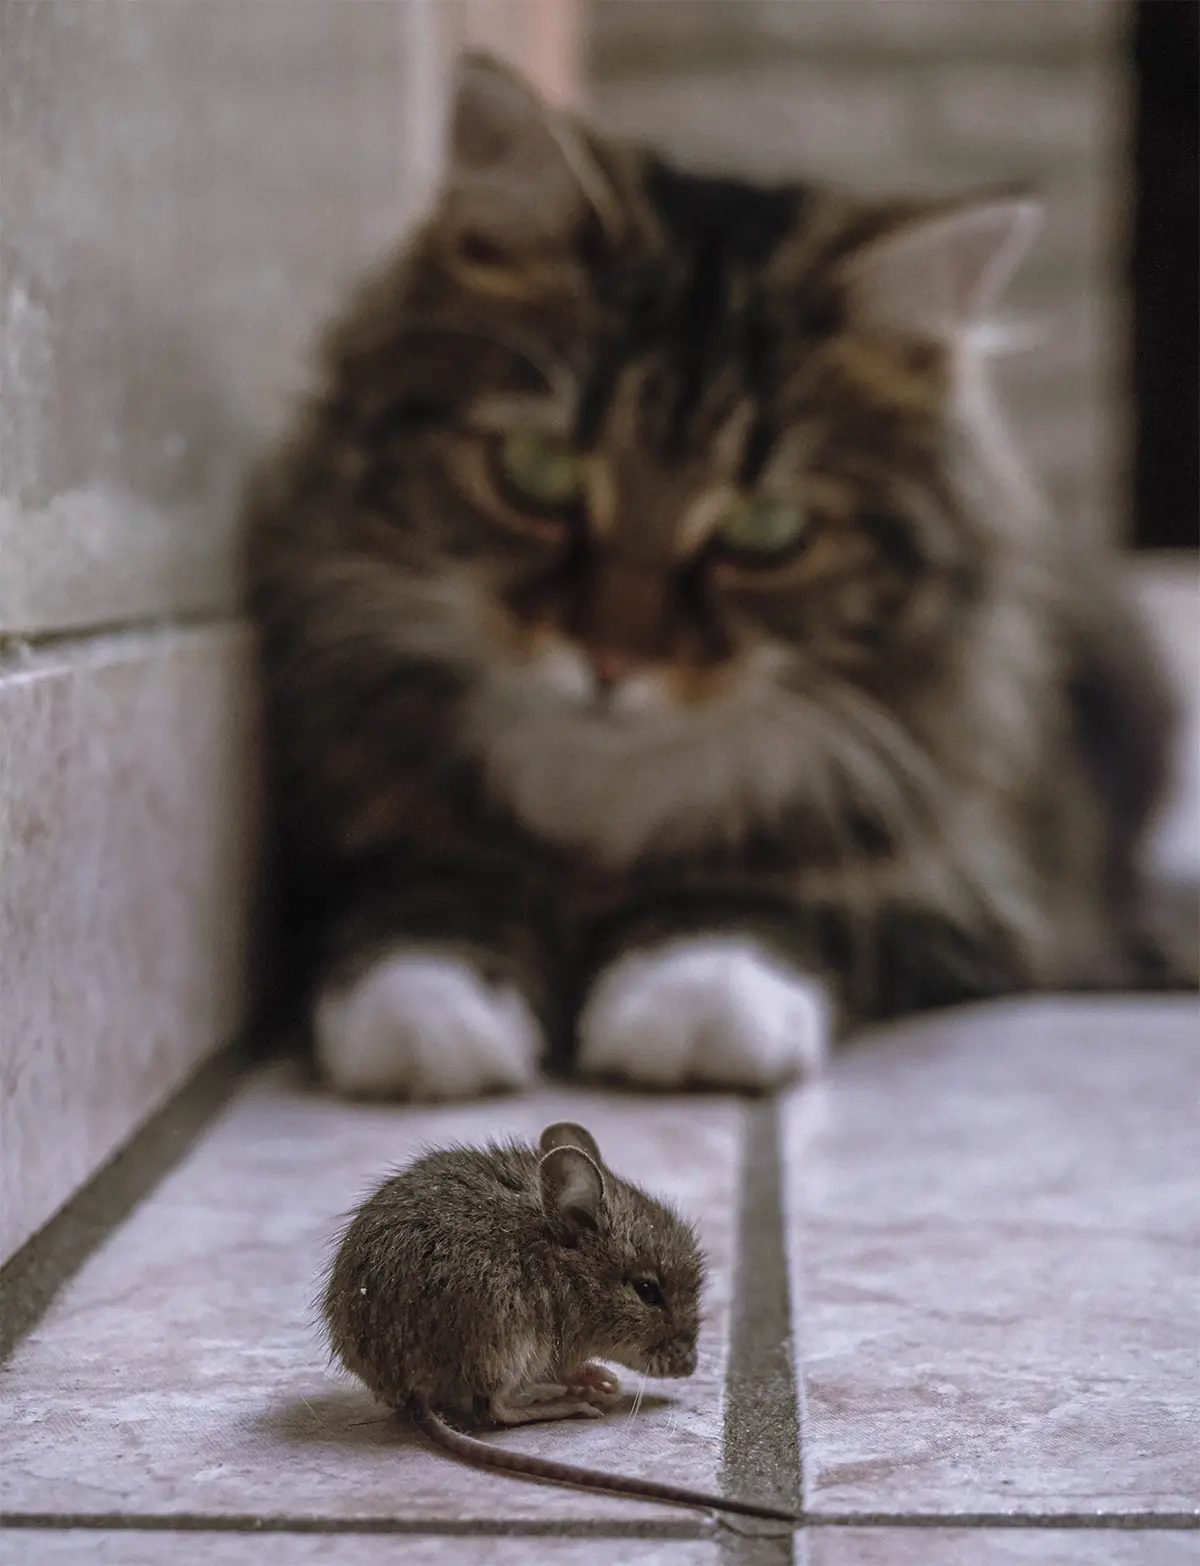 Γιατί οι γάτες φέρνουν ποντίκια και παιχνίδια στους ιδιοκτήτες τους;